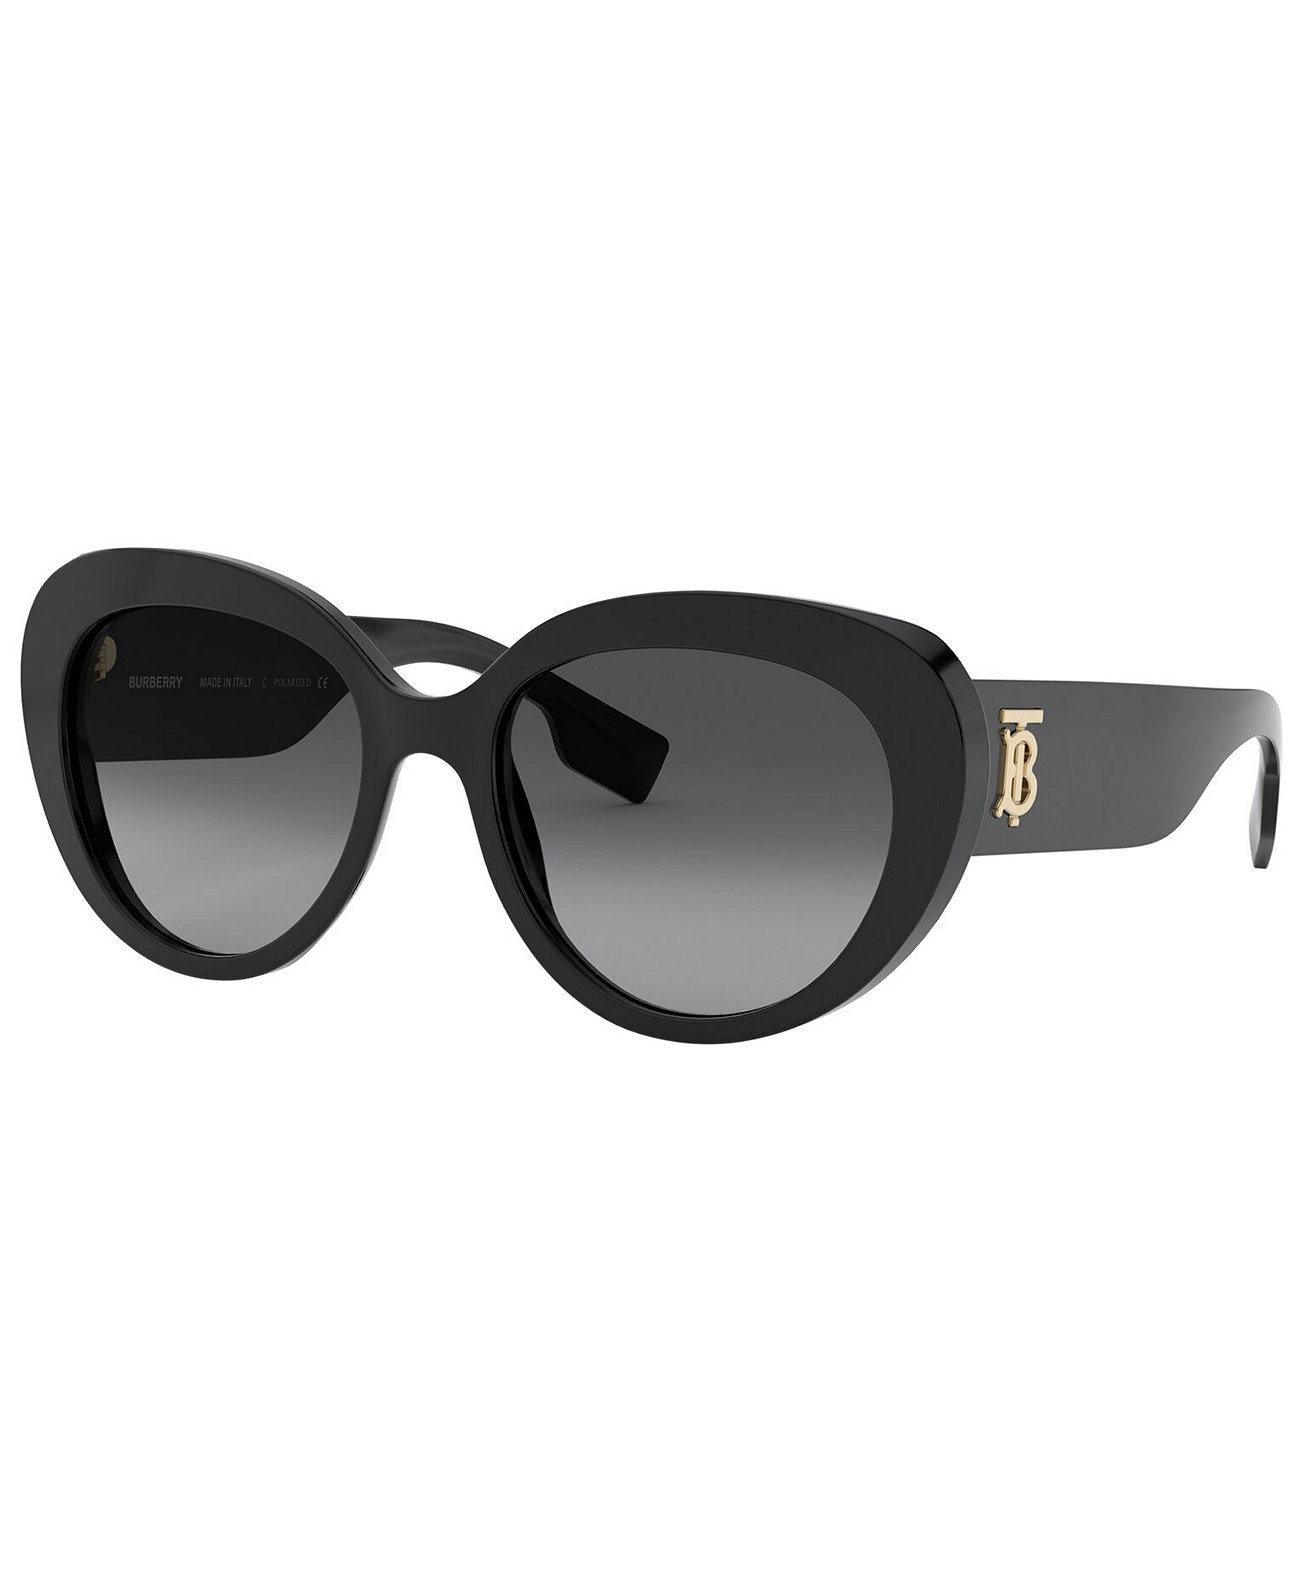 Женские поляризованные солнцезащитные очки, BE4298 Burberry